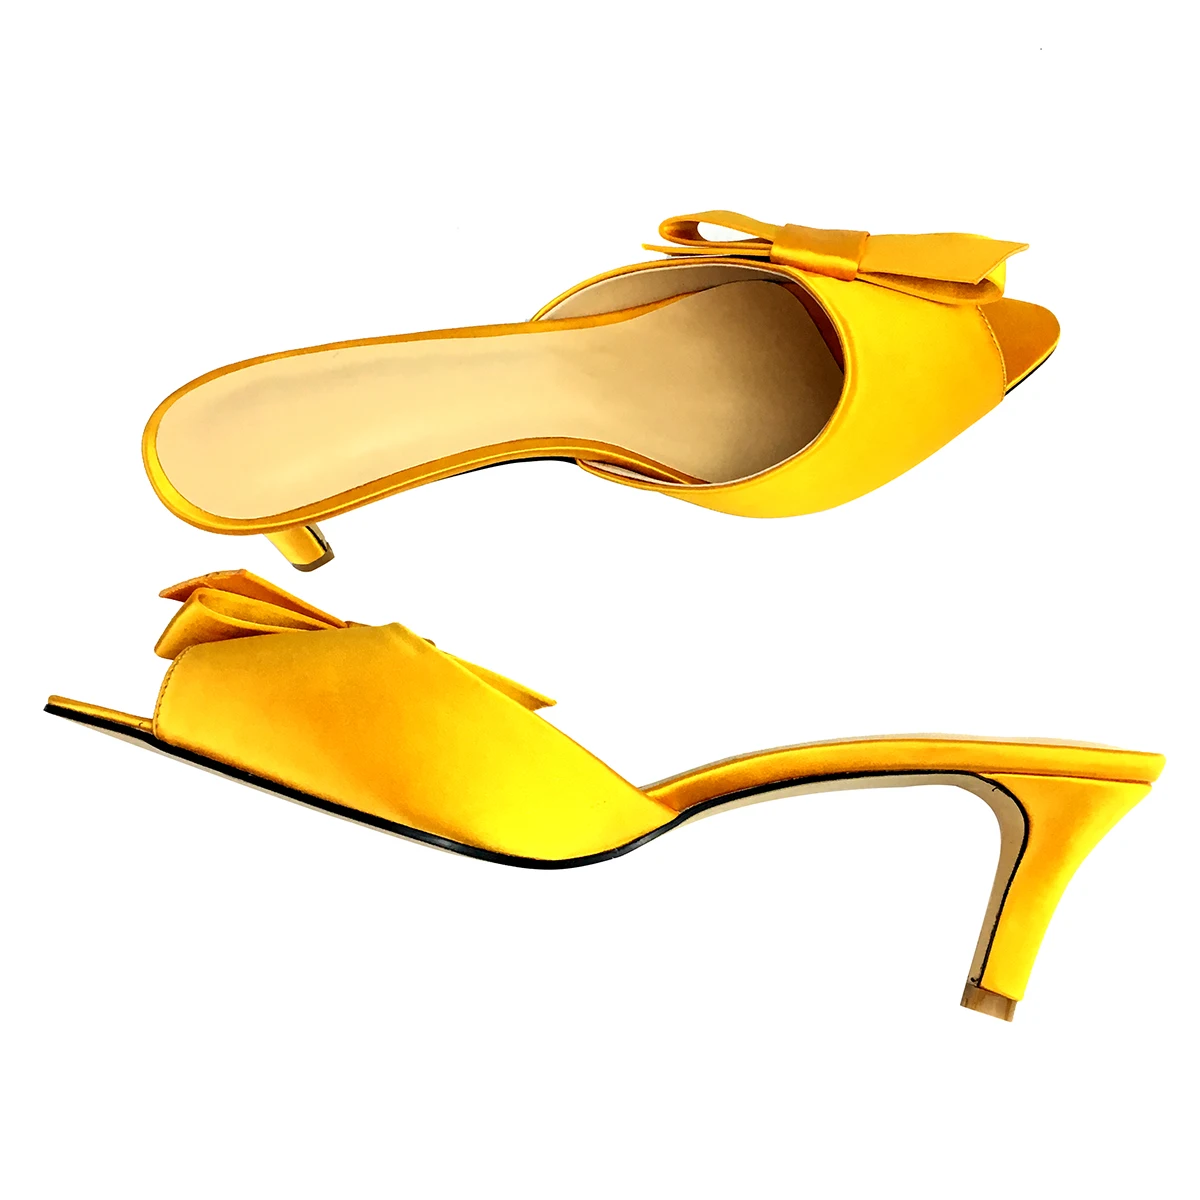 Aiyoway/босоножки без задника на среднем каблуке с бантом; босоножки; цвет золотой, атласный; женская обувь с острым носком; повседневная обувь для отдыха; слипоны